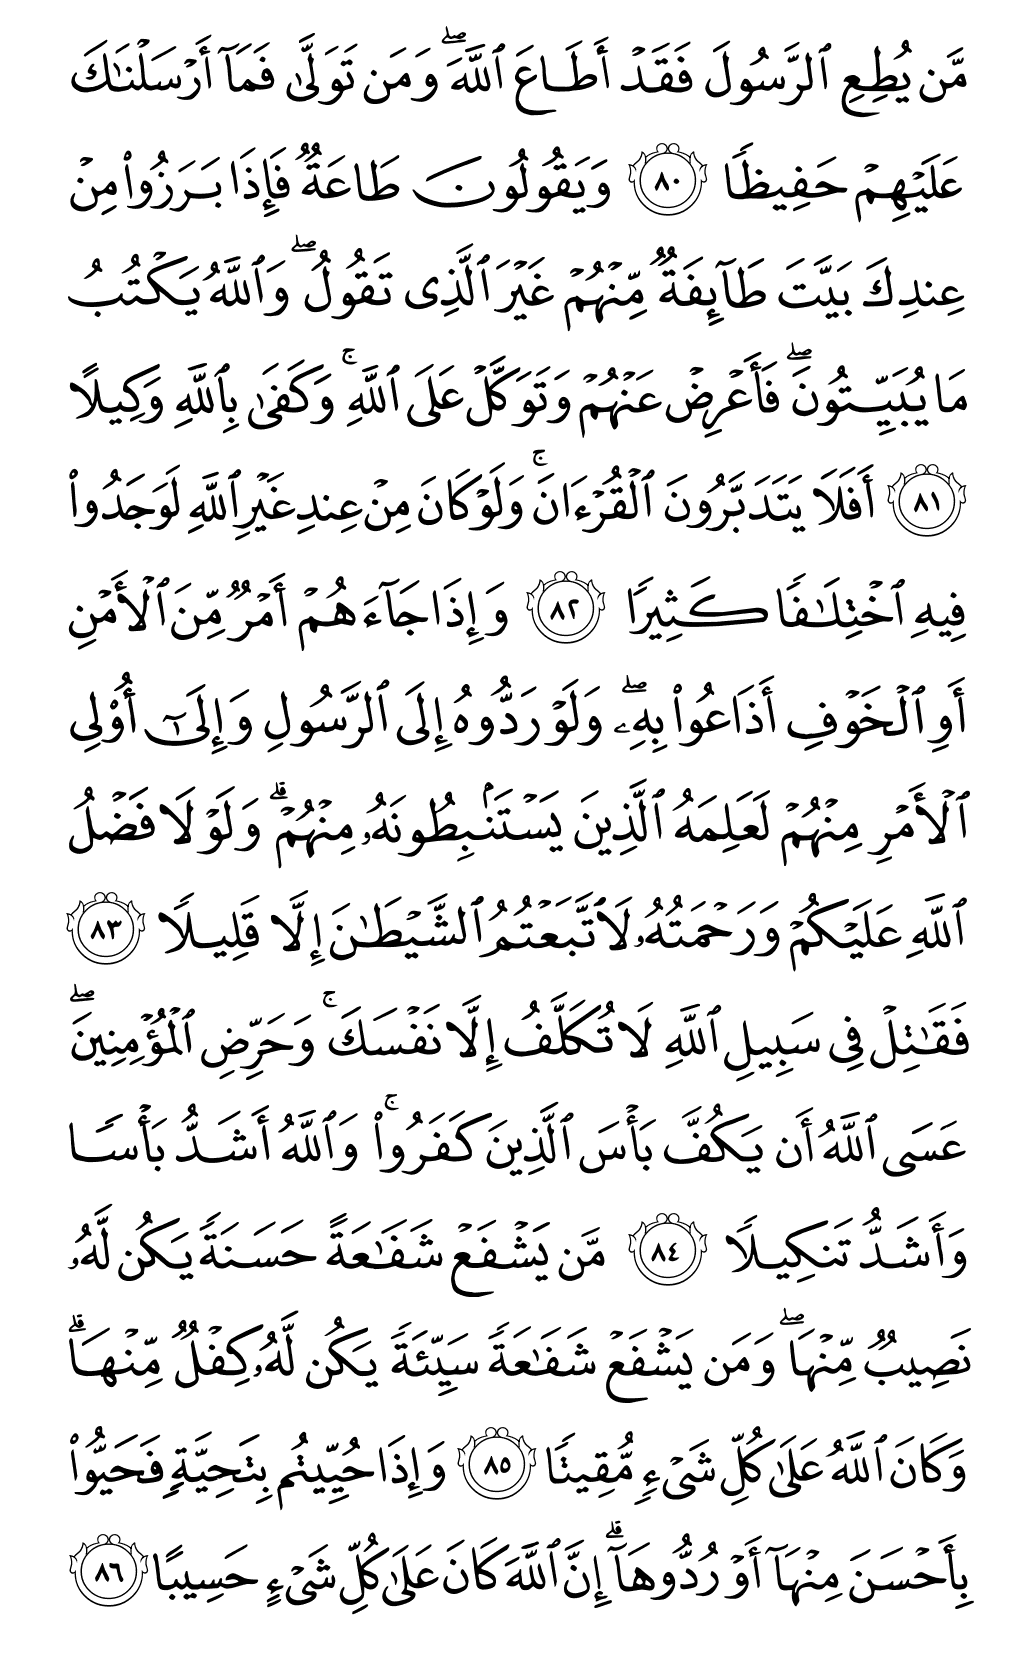 الصفحة رقم 91 من القرآن الكريم